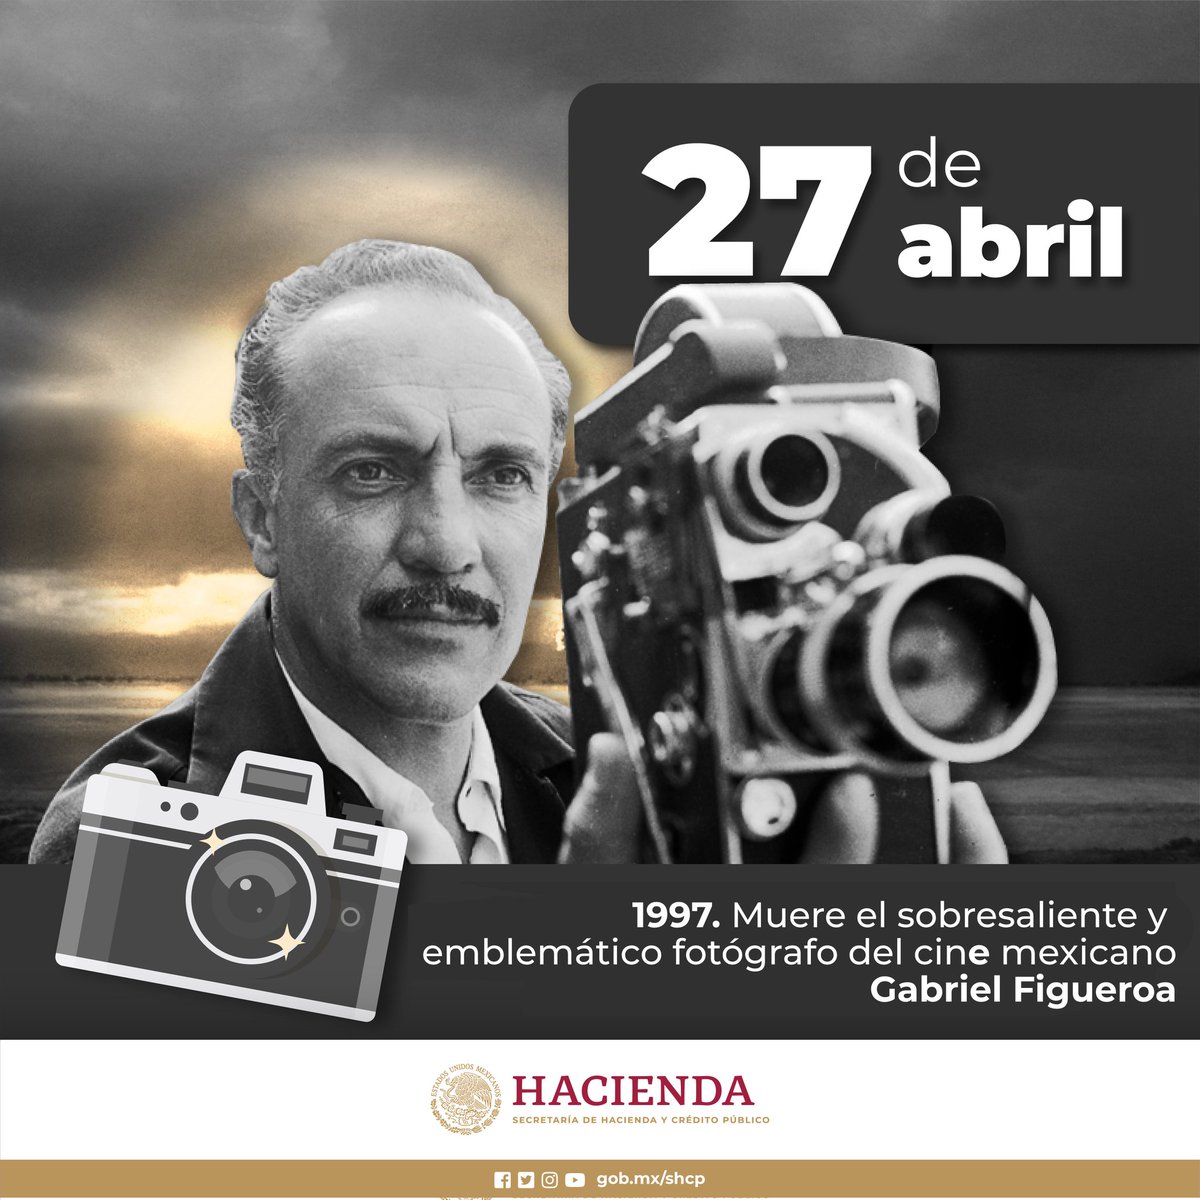 El 27 de abril de 1997 murió el más célebre fotógrafo del cine mexicano: Gabriel Figueroa, quien forjó un estilo visual de gran riqueza artística en las películas del “Indio” Fernández como Enamorada, Bugambilia, La Perla, Río Escondido, Pueblerina, además de realizar la…